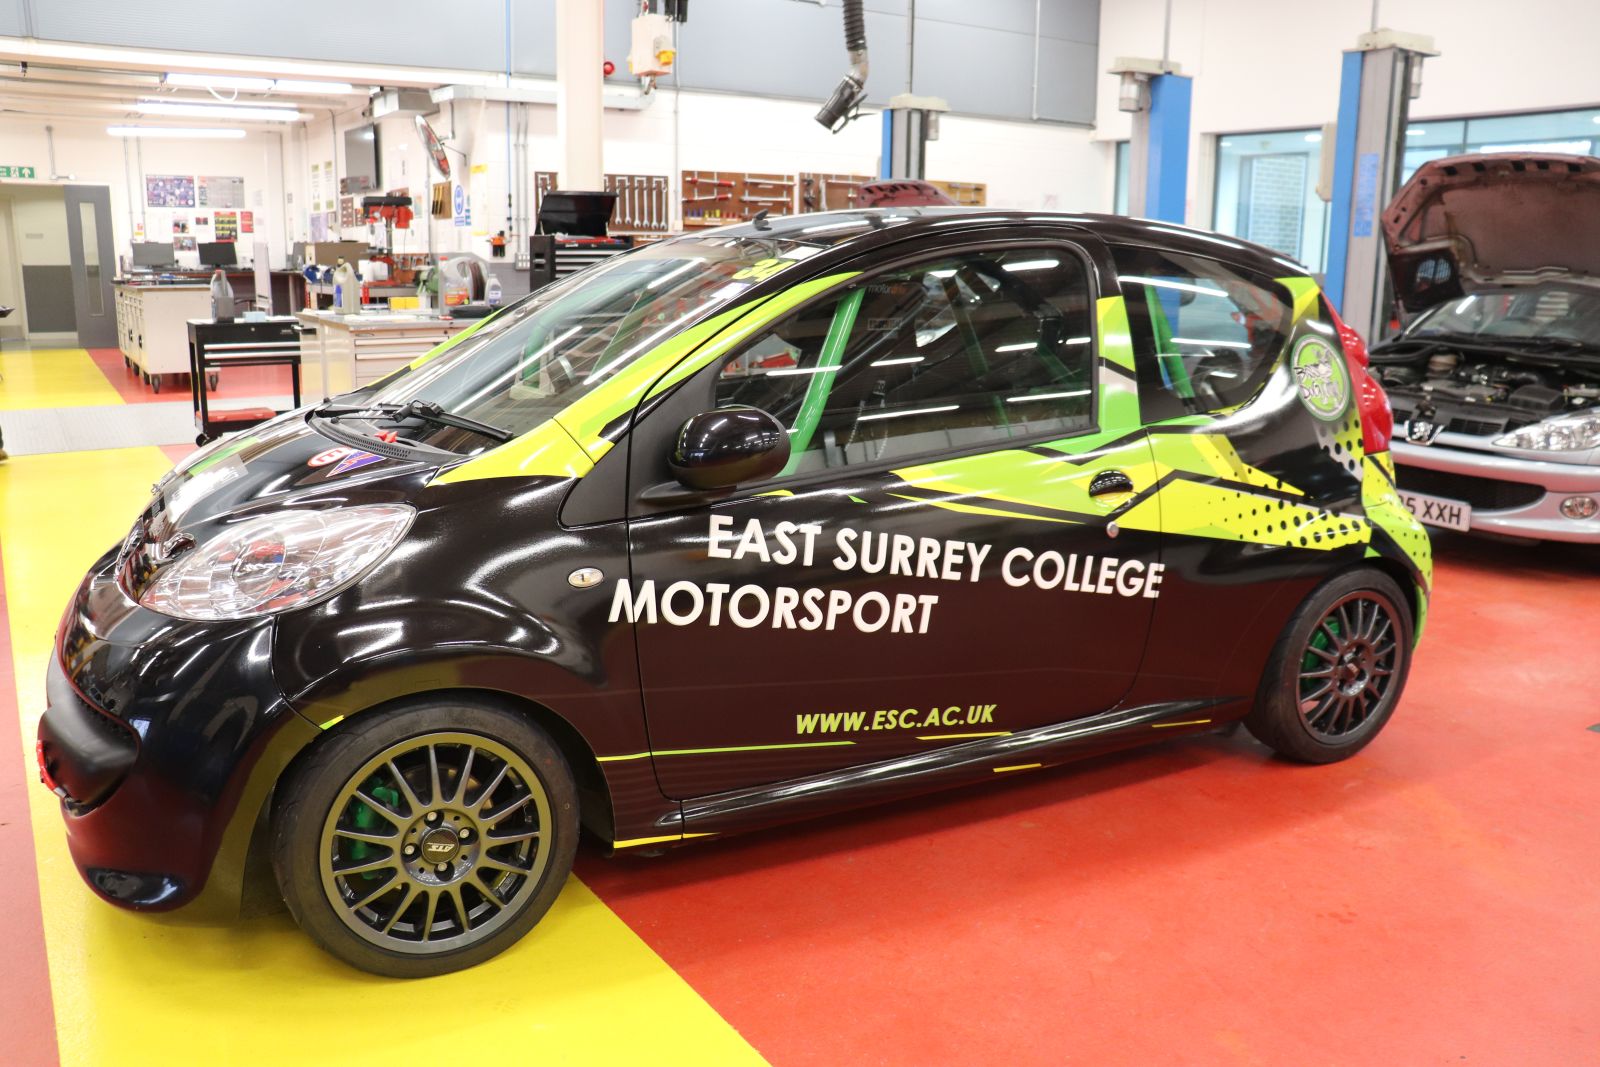 East Surrey College Motorsport Car taken 6 April 2022